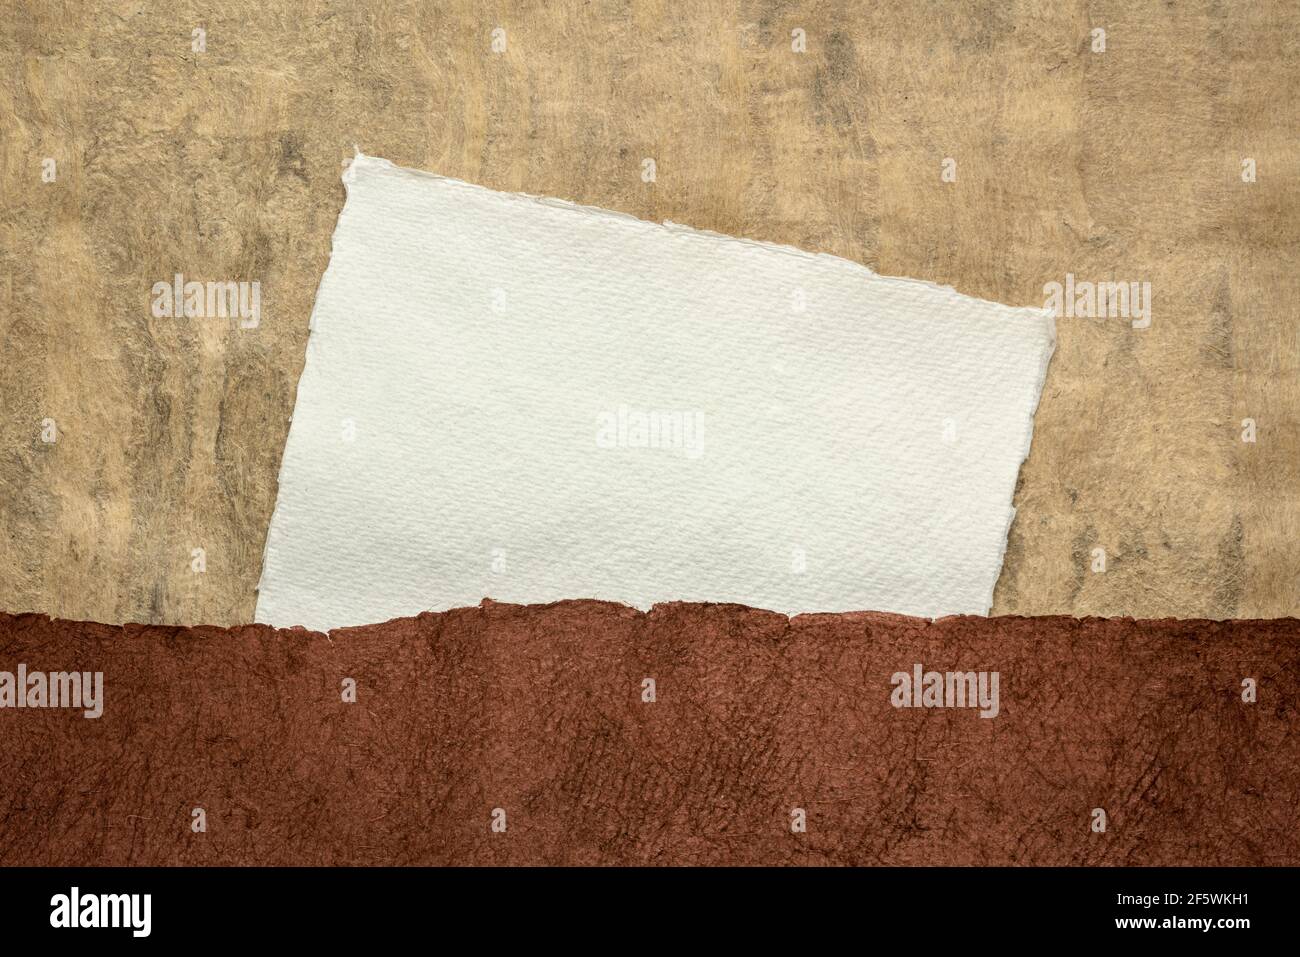 Petite feuille de papier blanc Khadi chiffon vierge contre terre paysage abstrait ton Banque D'Images